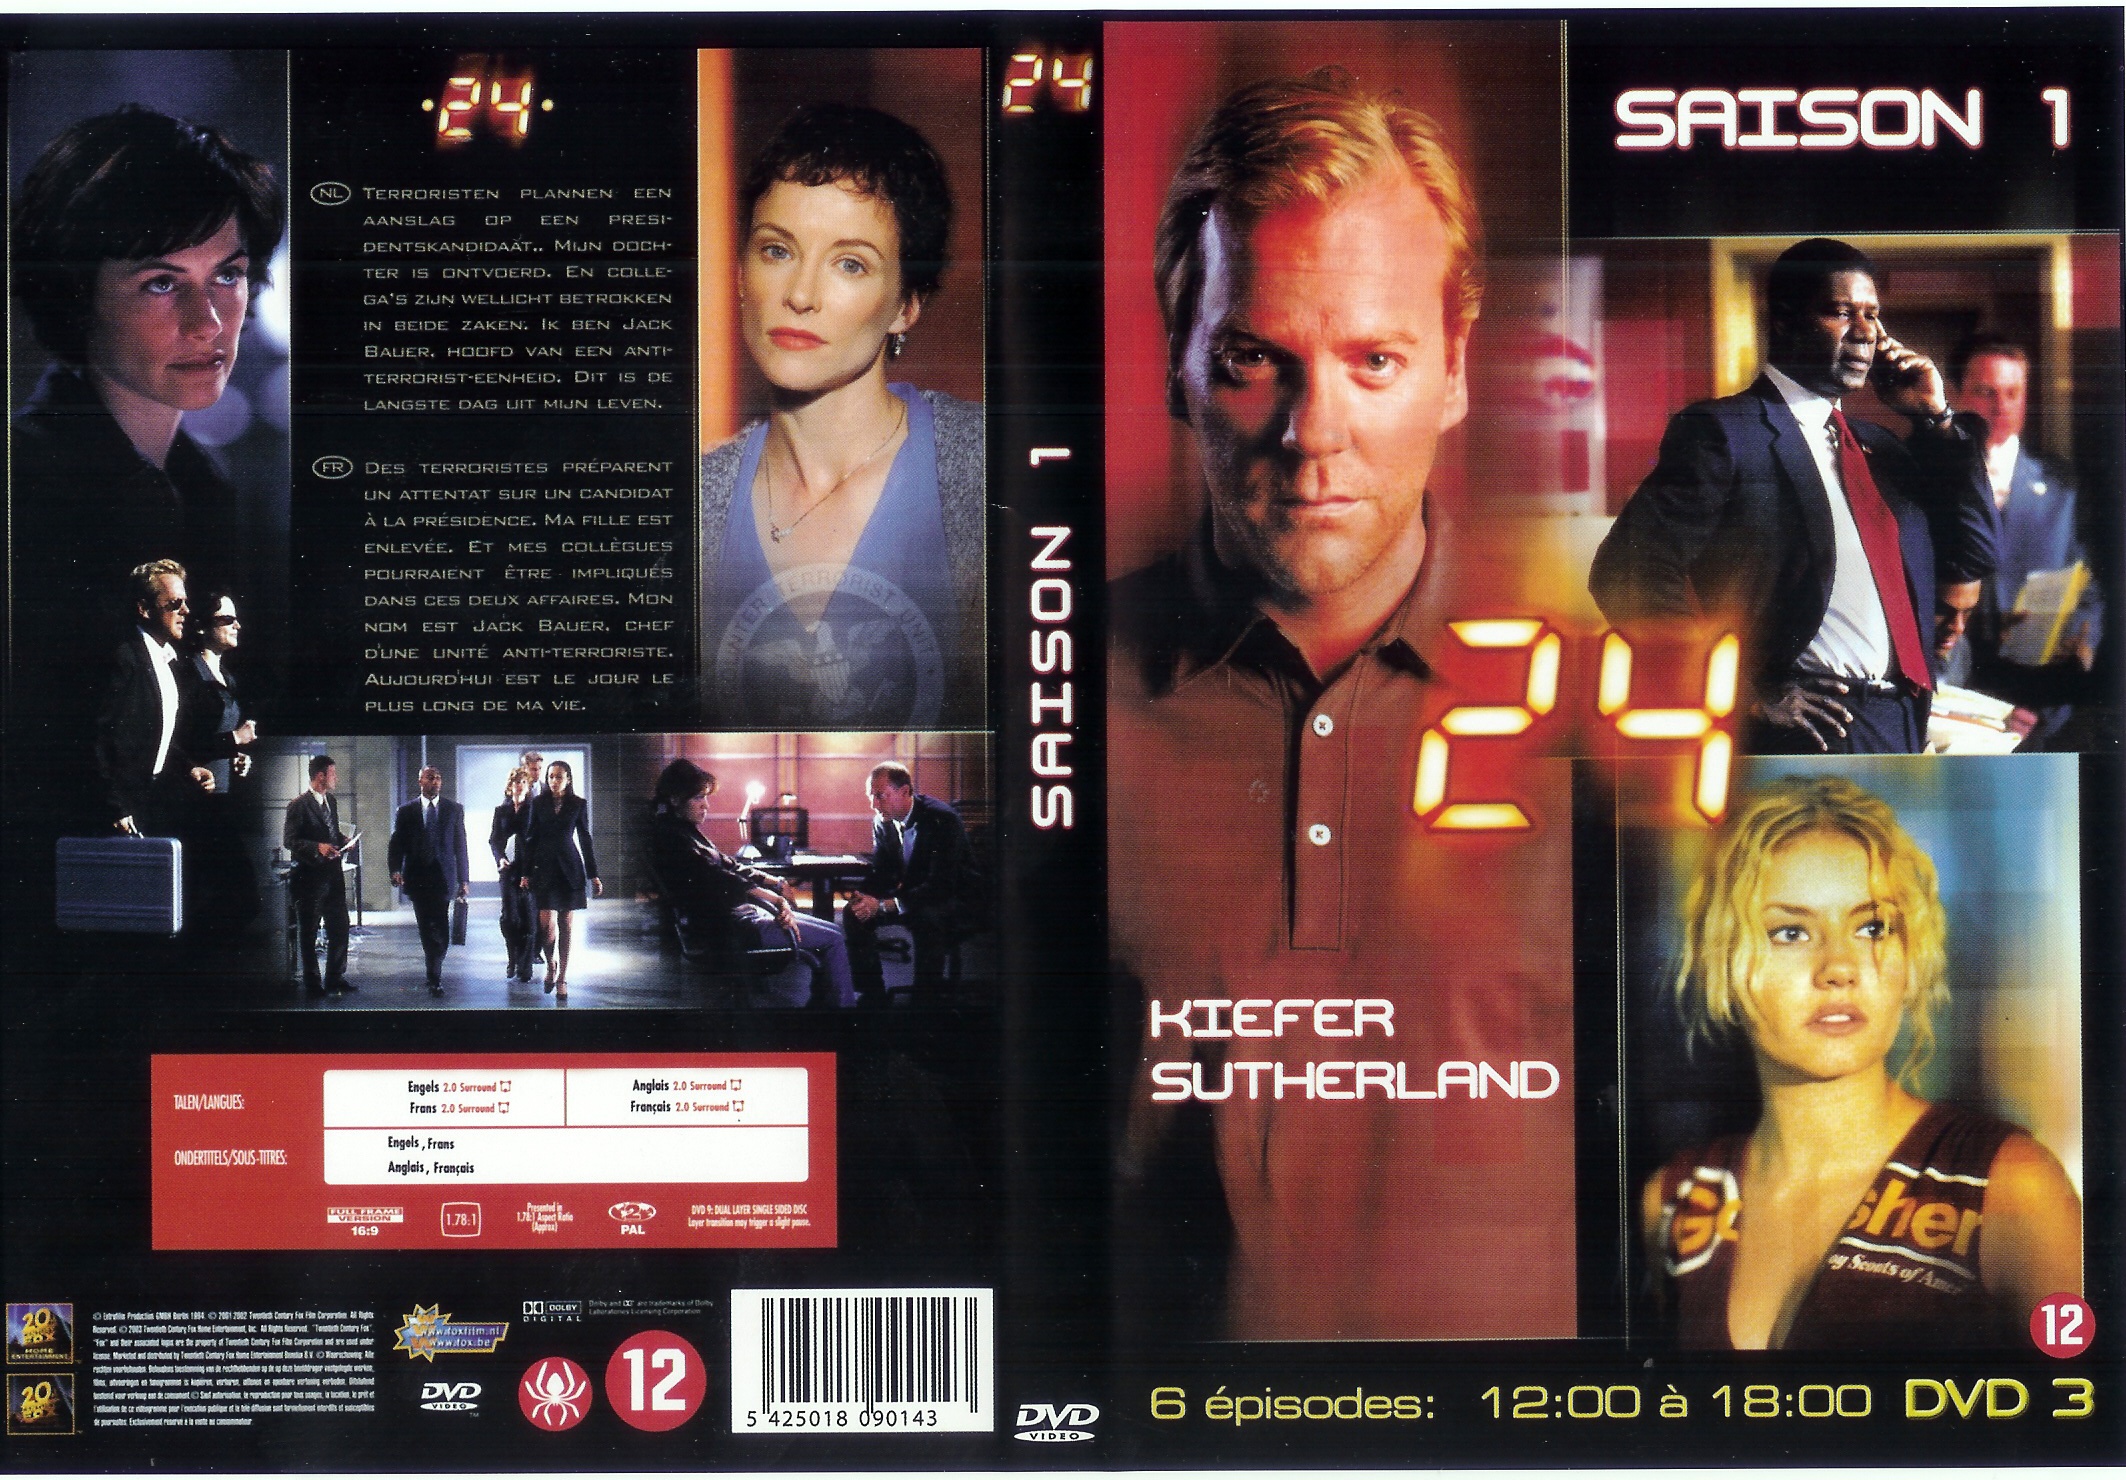 Jaquette DVD 24 heures chrono Saison 1 dvd 3 (coffret 4 dvd)